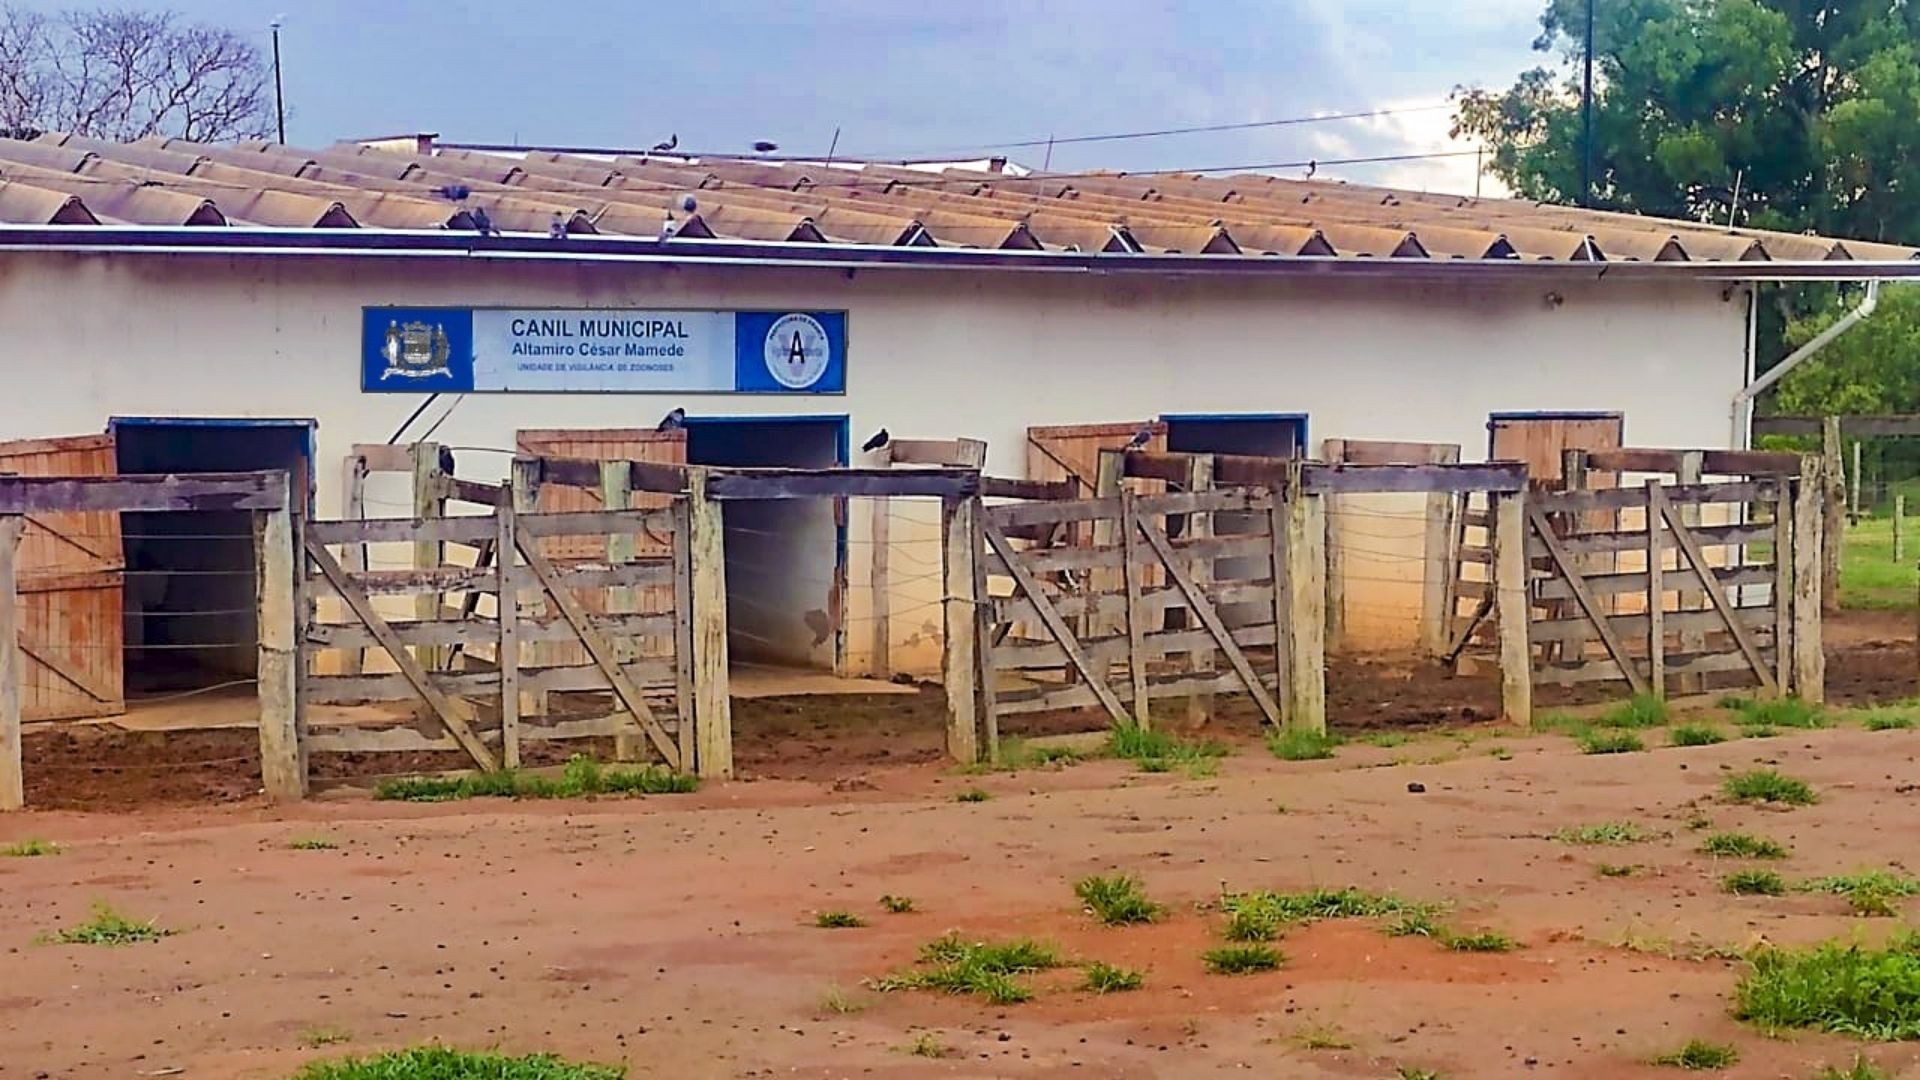 Castração de animais gratuita volta a ser oferecida pelo Canil Municipal de Franca, SP